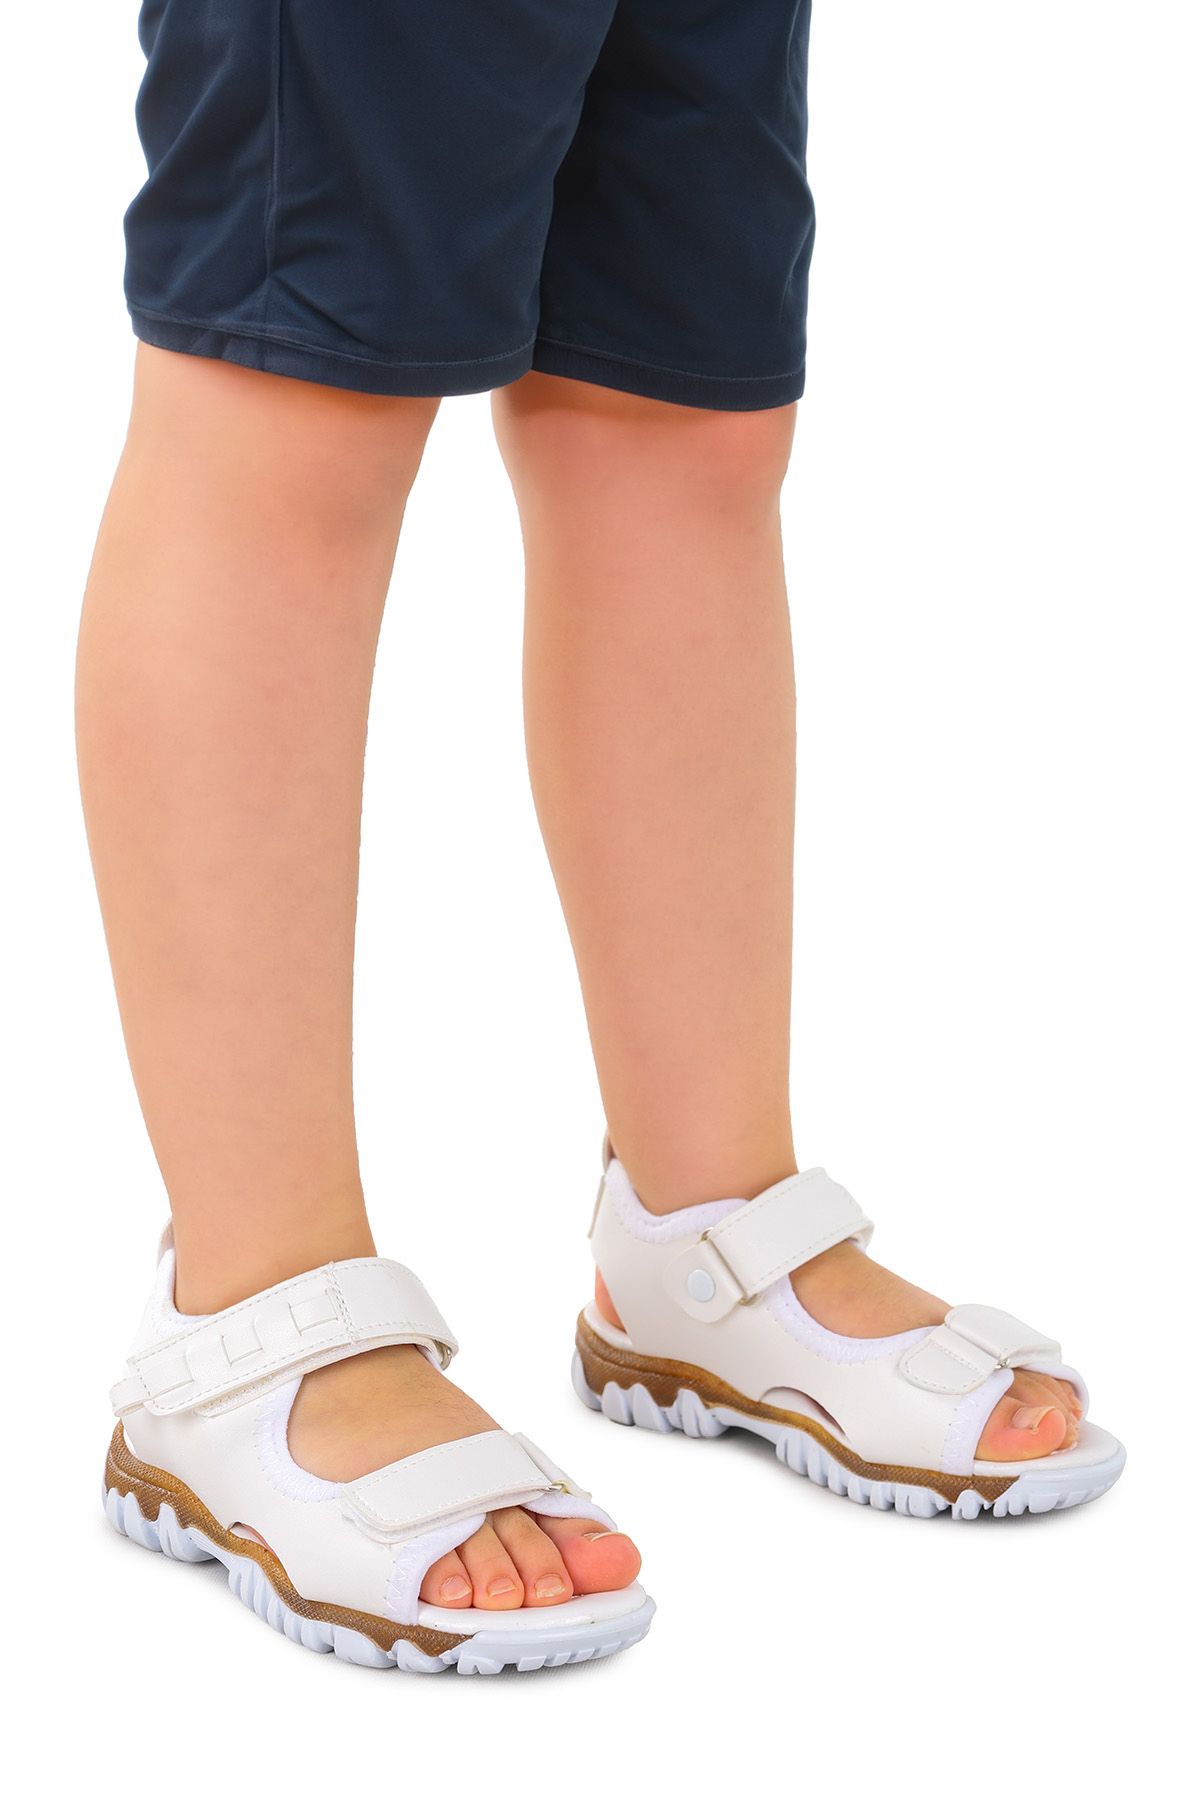 Kiko Kids Erkek Çocuk Sandalet Arz 2361